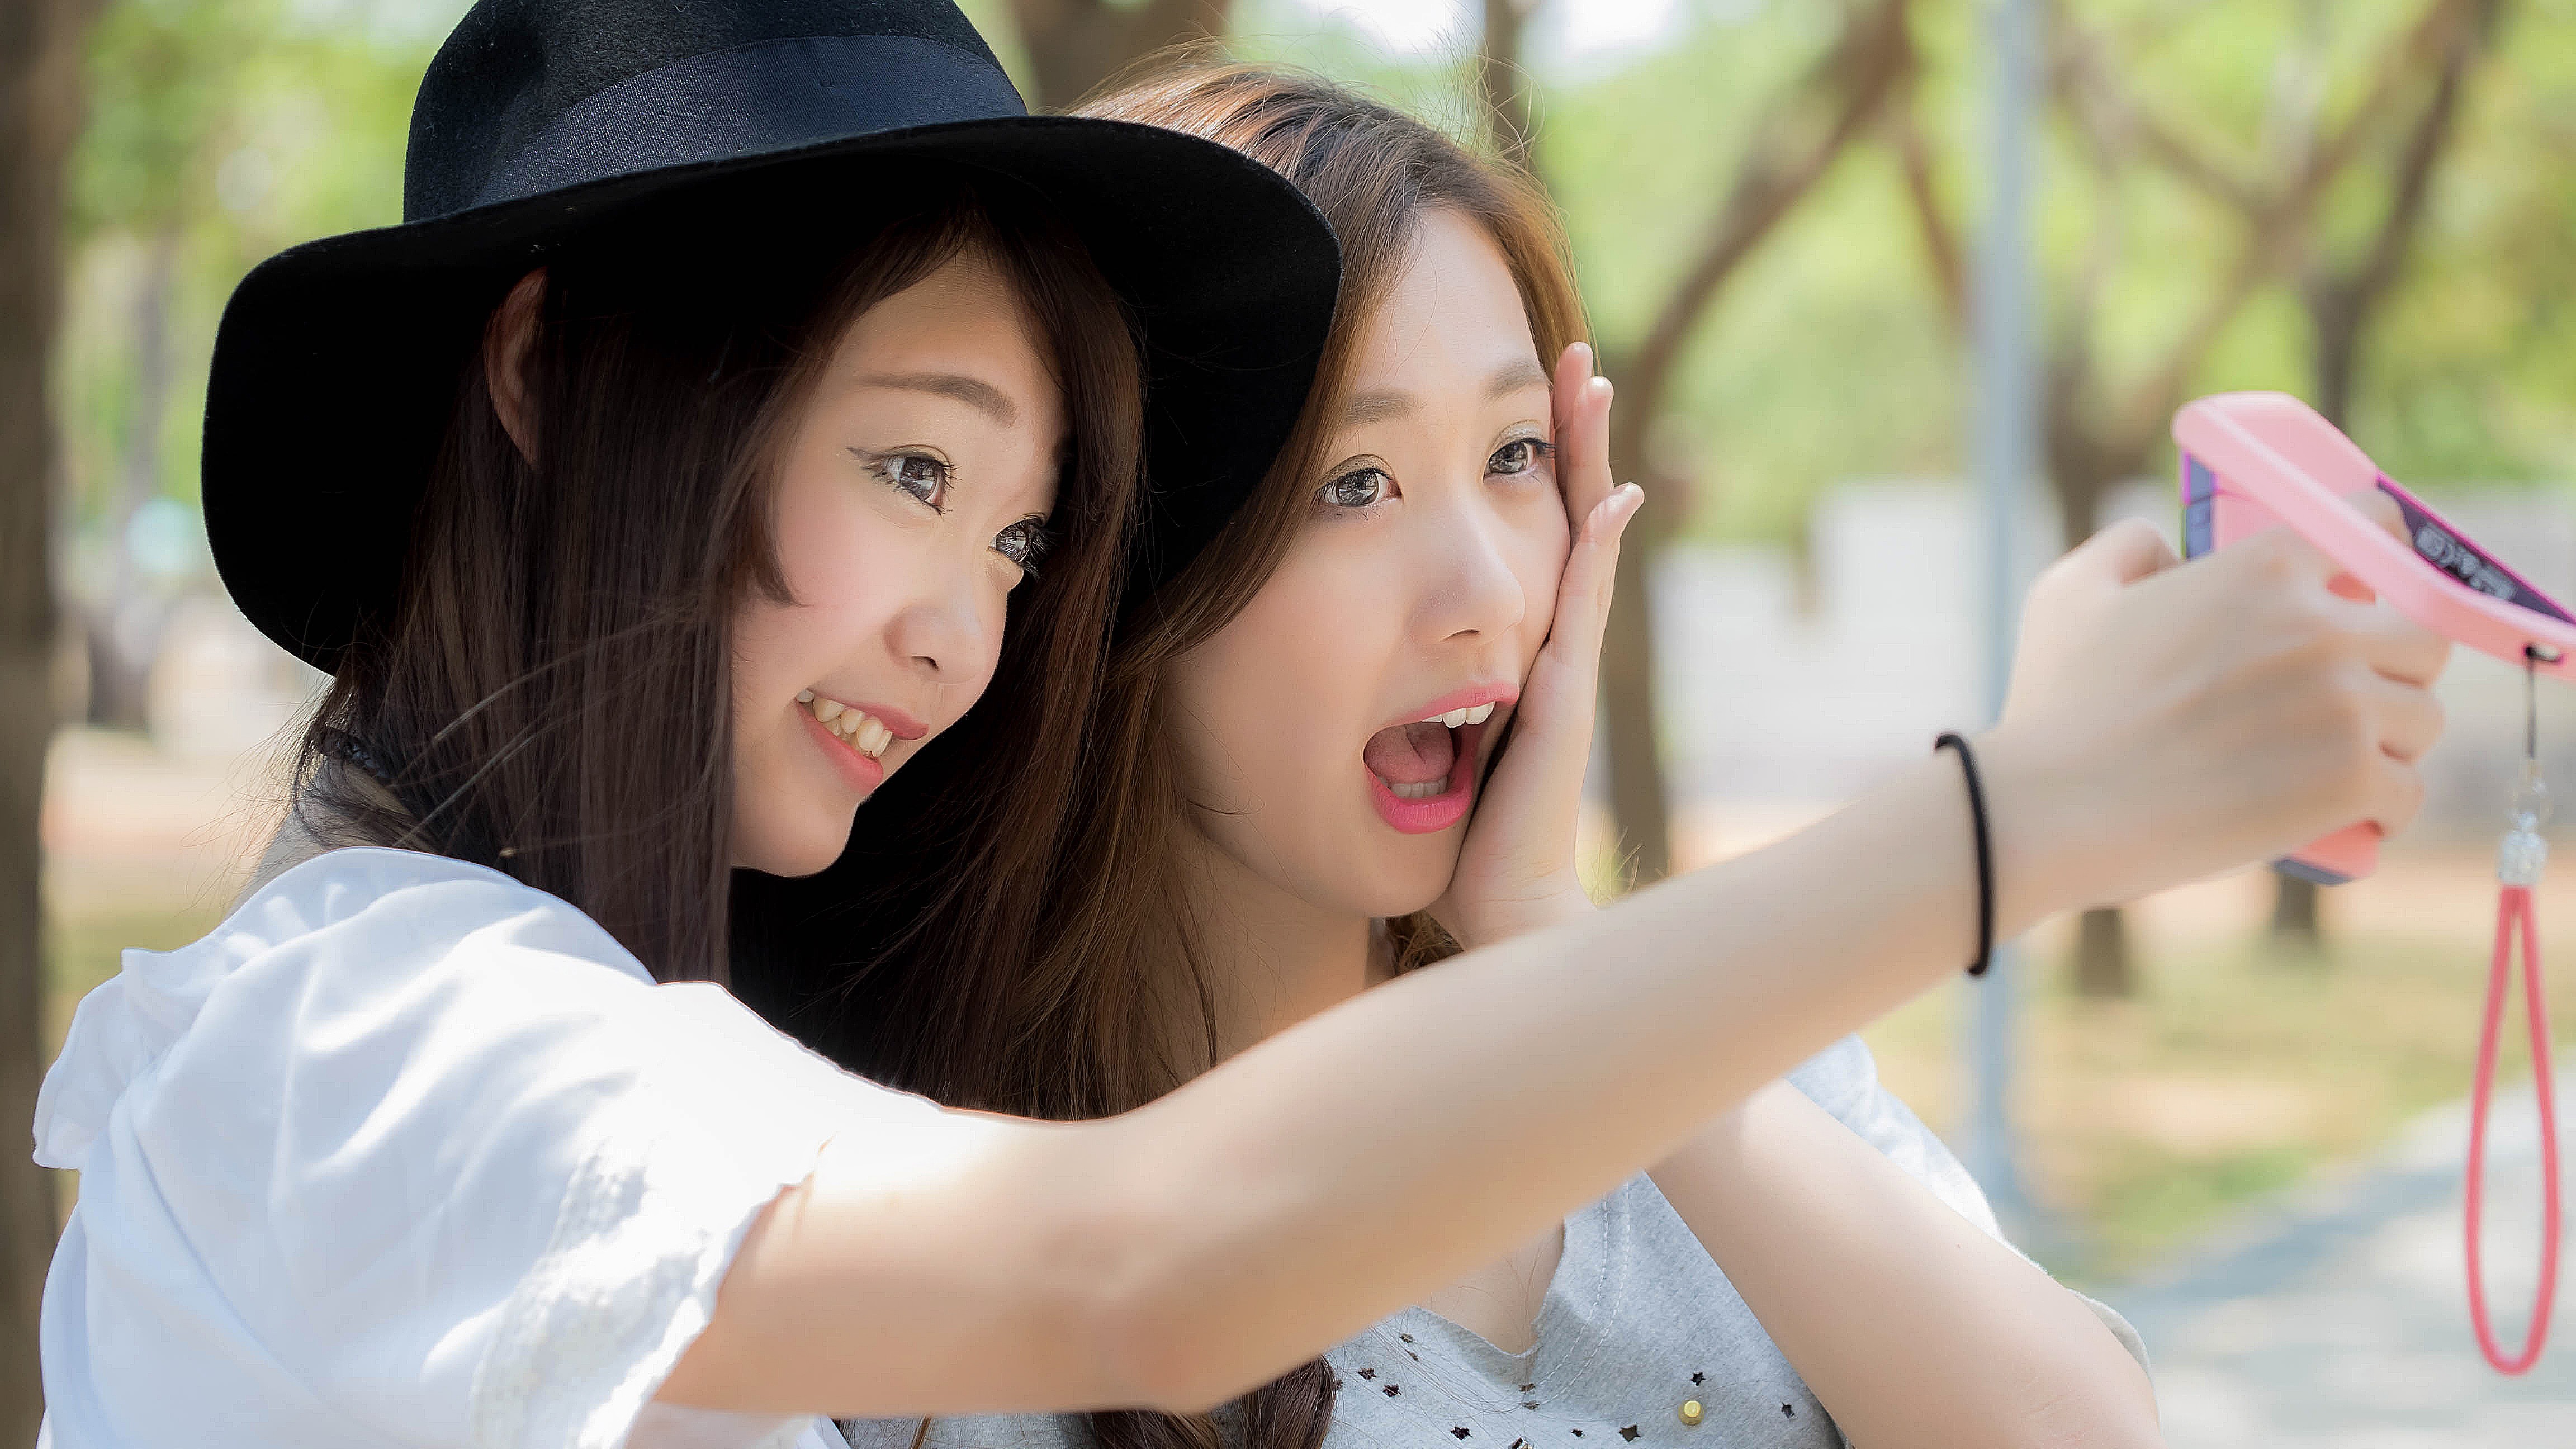 People 4608x2592 couple brunette millinery looking away women Asian model smartphone two women hat women with hats women outdoors open mouth selfies